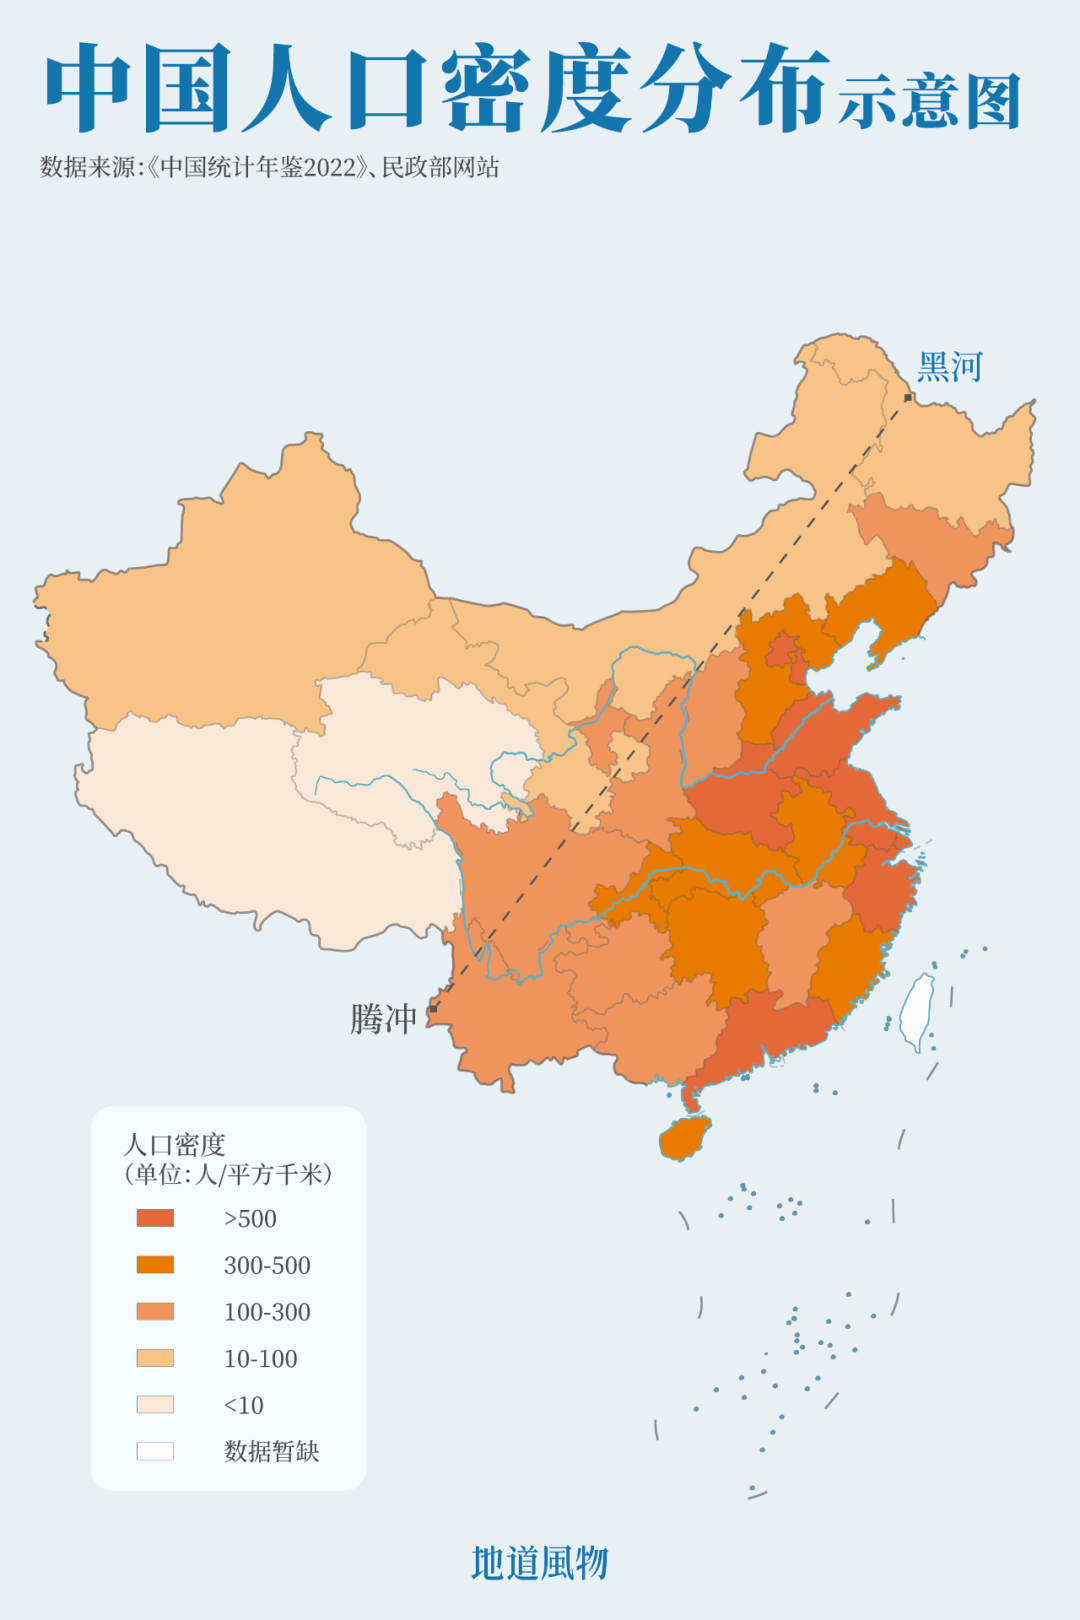 胡焕庸线与中国人口密度分布示意图